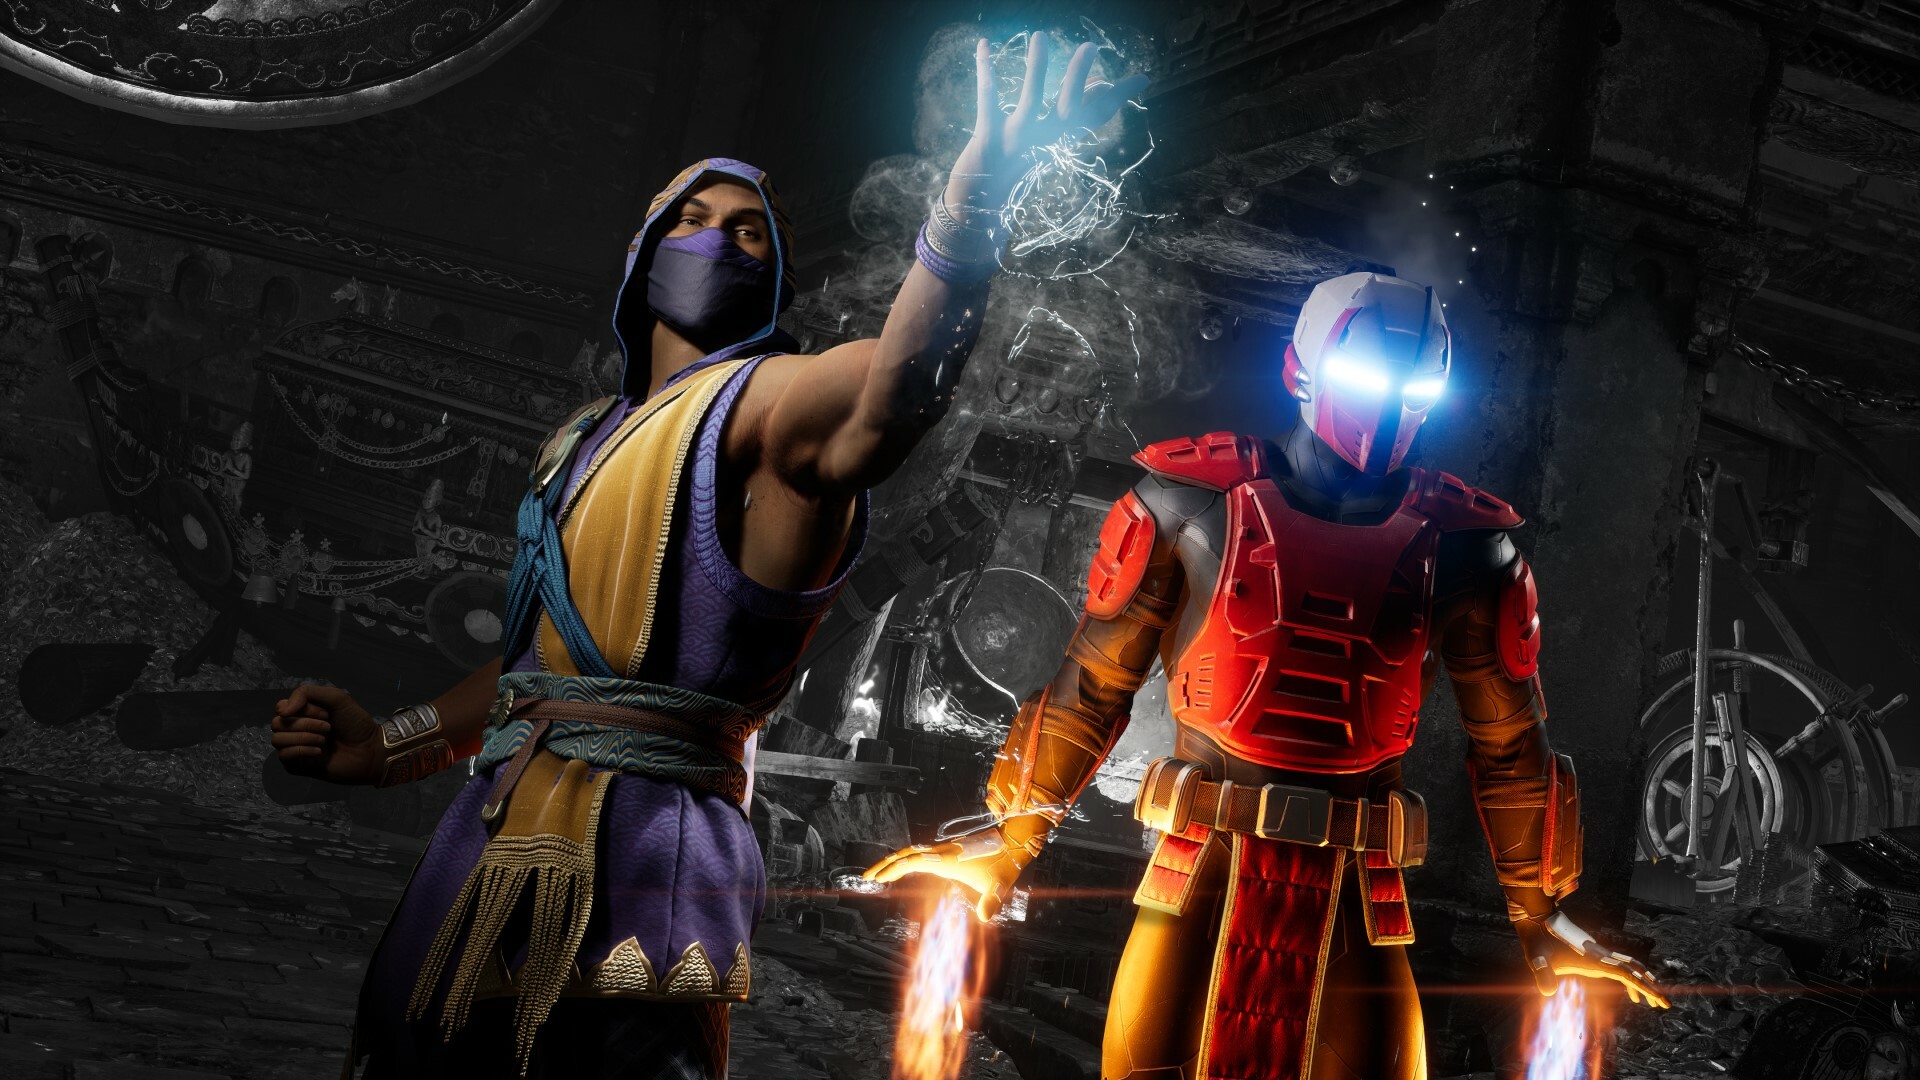 Comunidade Steam :: Mortal Kombat 1